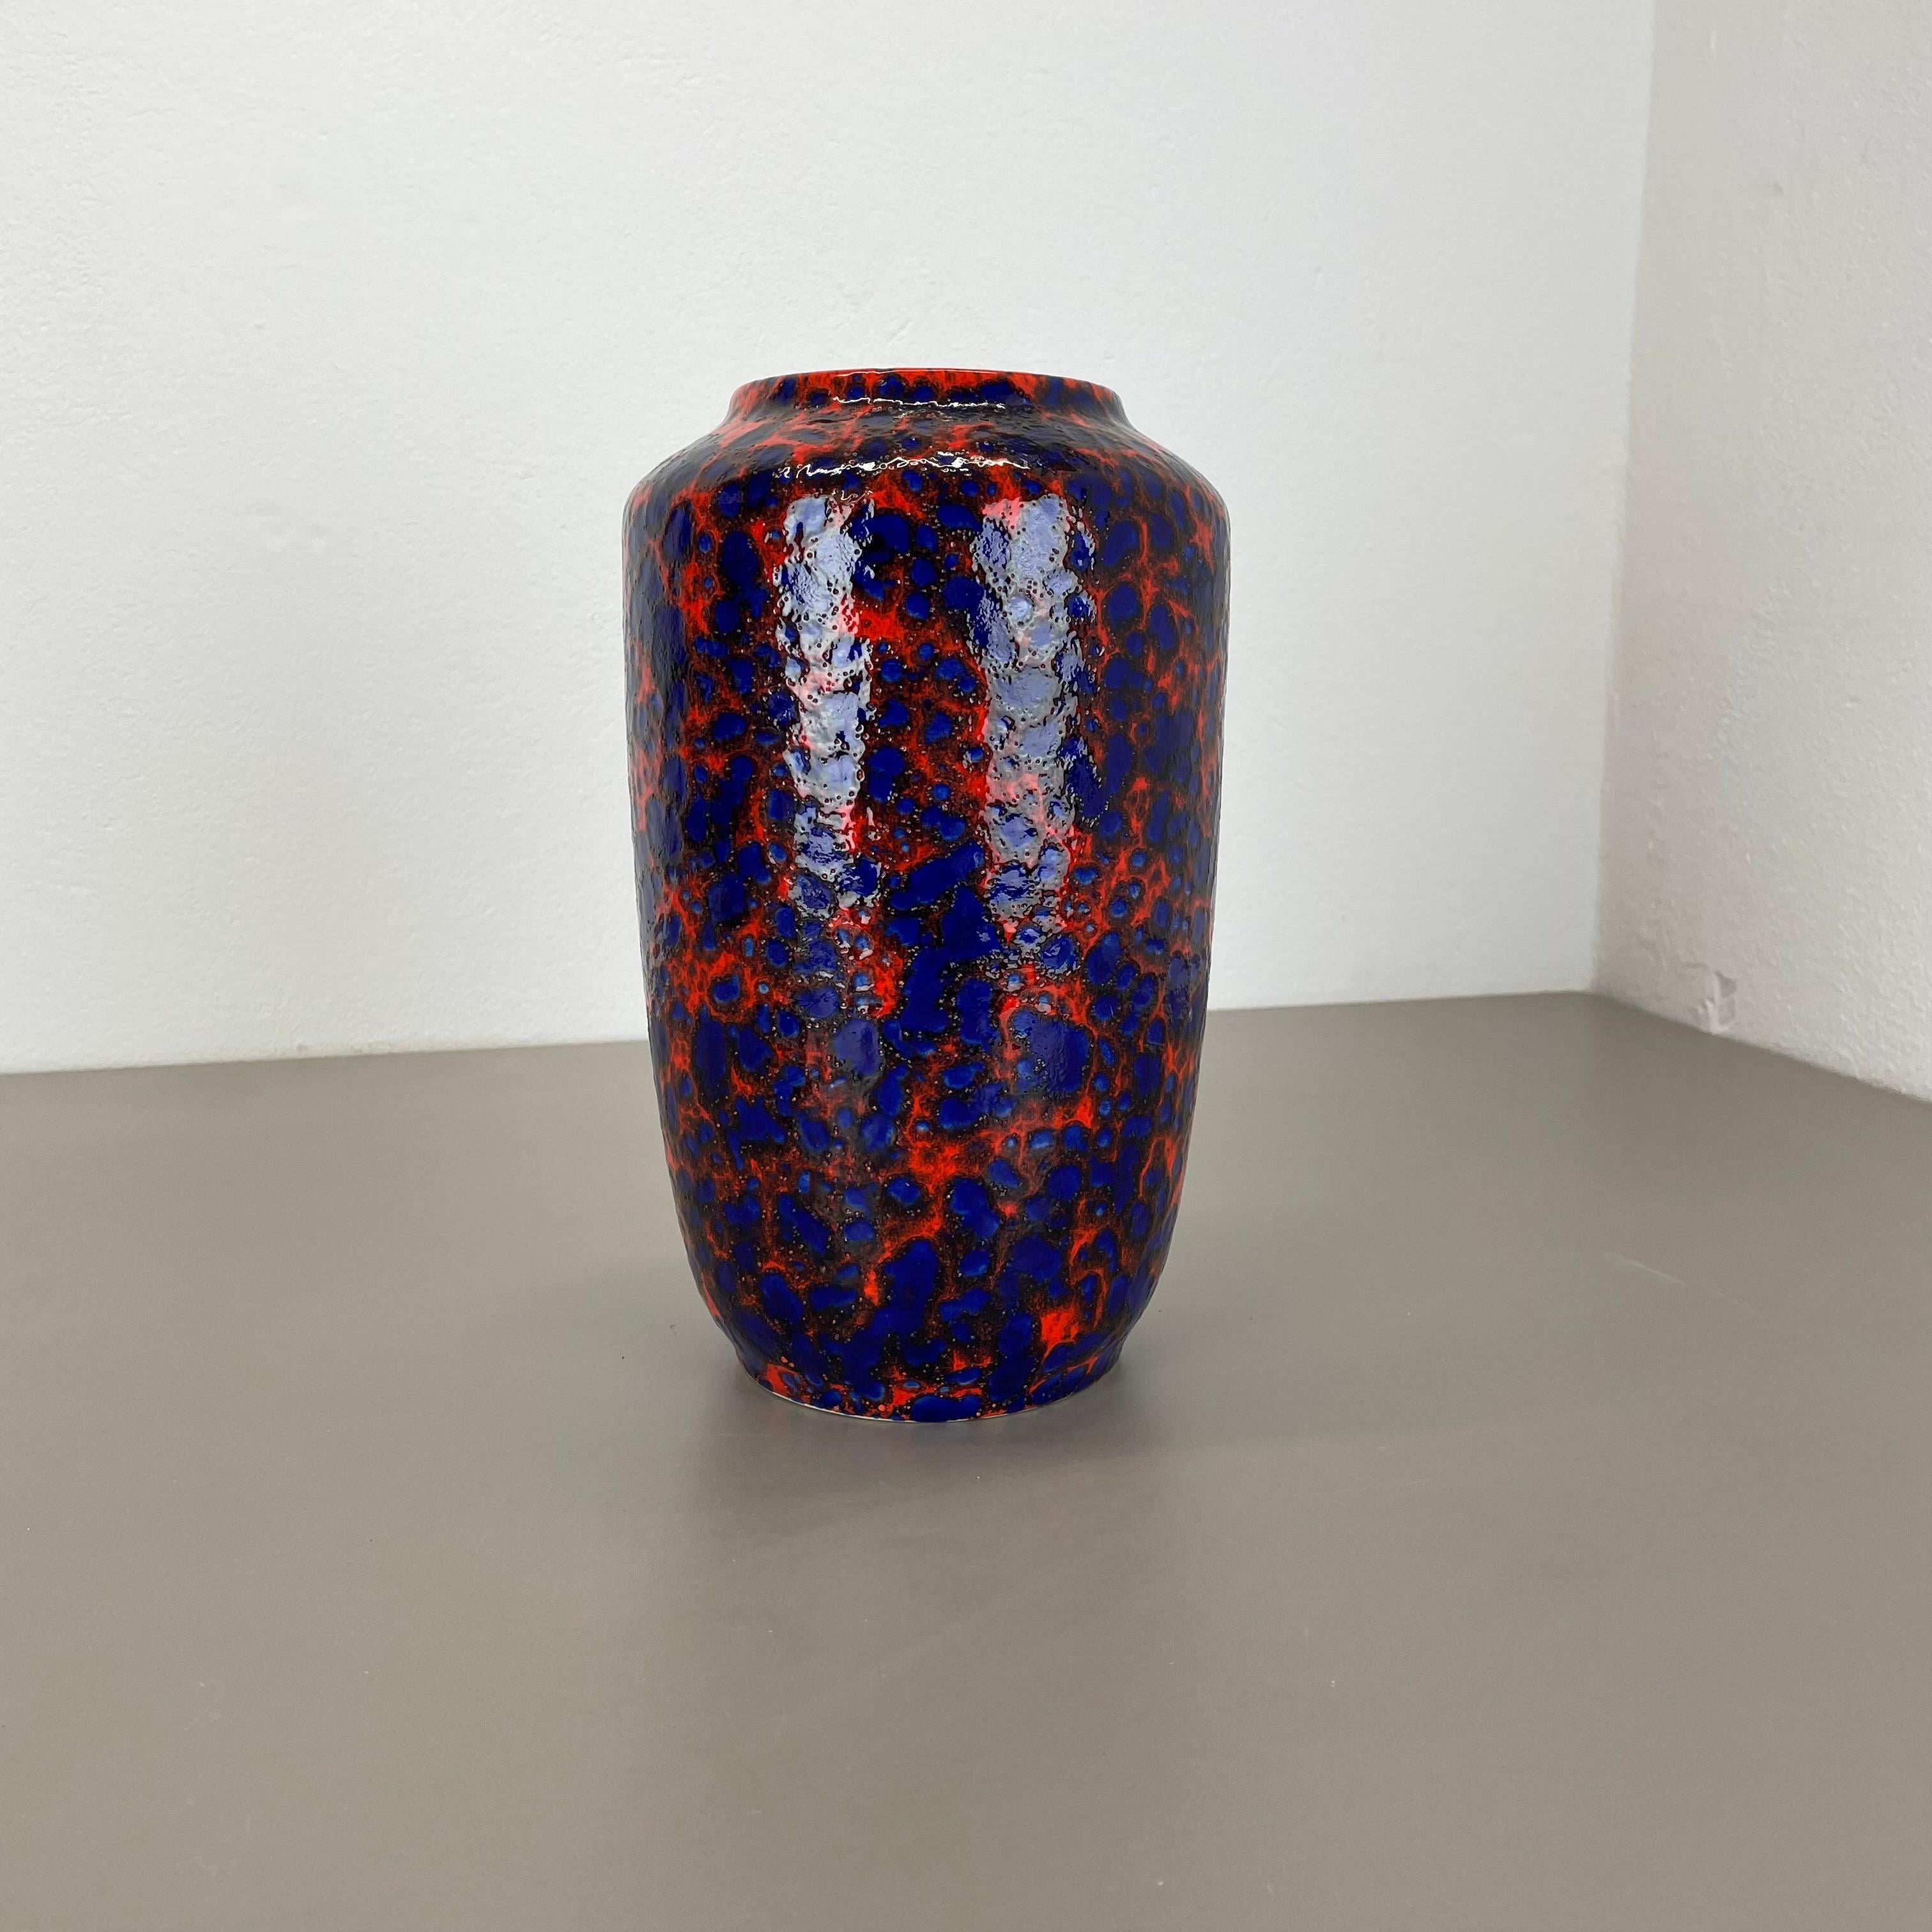 Article :

Vase d'art en lave grasse, glaçure lourde brutaliste


Producteur :

Scheurich, Allemagne



Décennie :

1970s




Ce vase vintage original a été produit dans les années 1970 en Allemagne. Il est réalisé en poterie céramique dans une